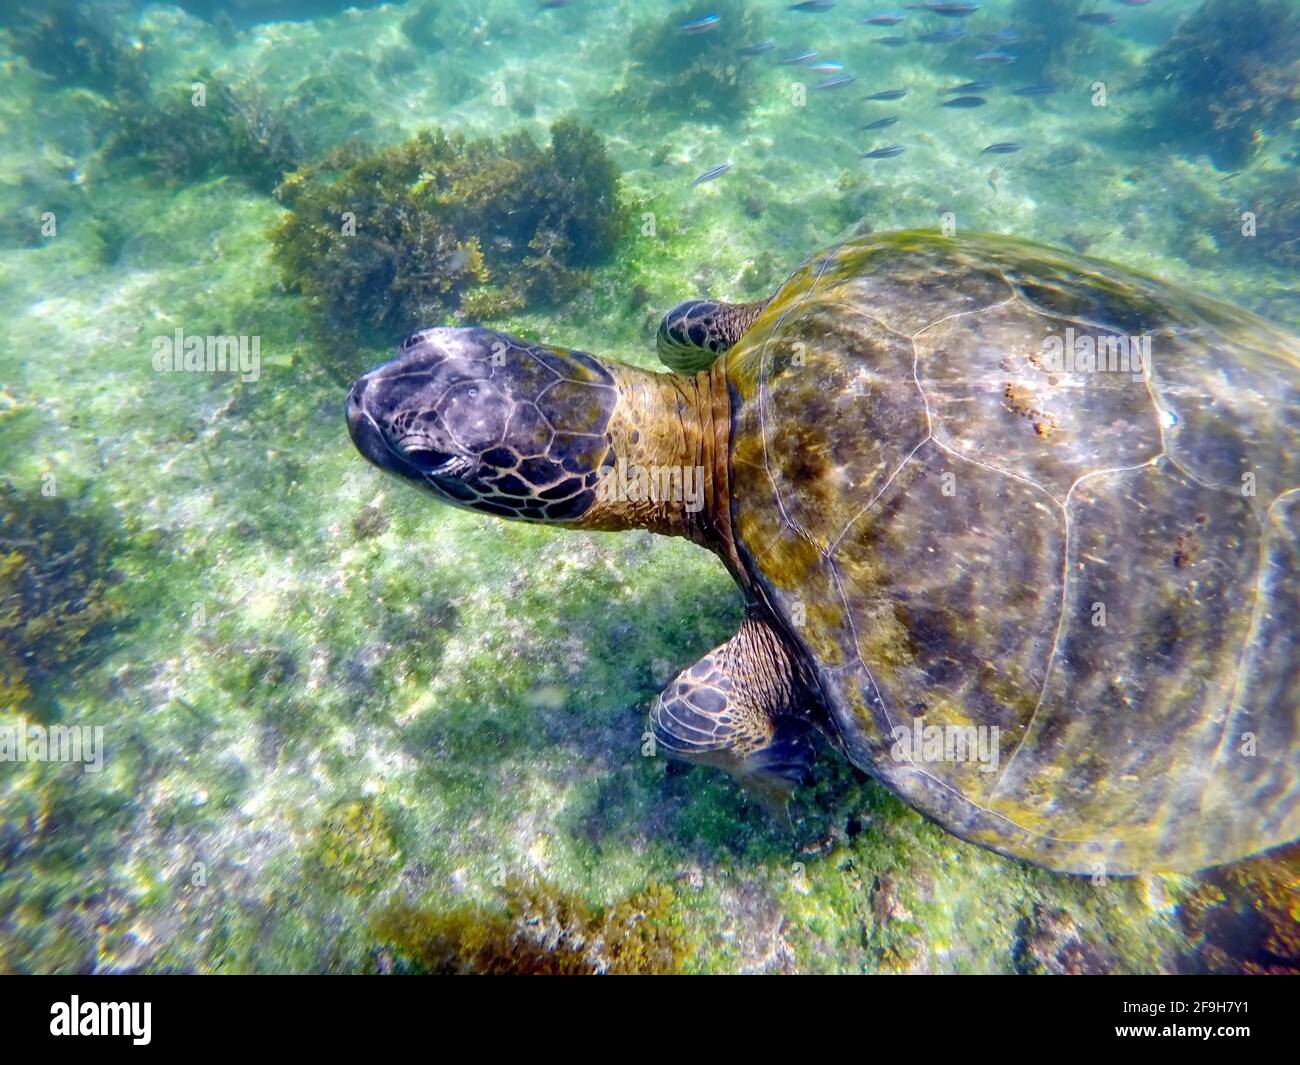 Close up of a Galapagos green sea turtle at Punta Espinoza, Fernandina Island, Galapagos, Ecuador Stock Photo